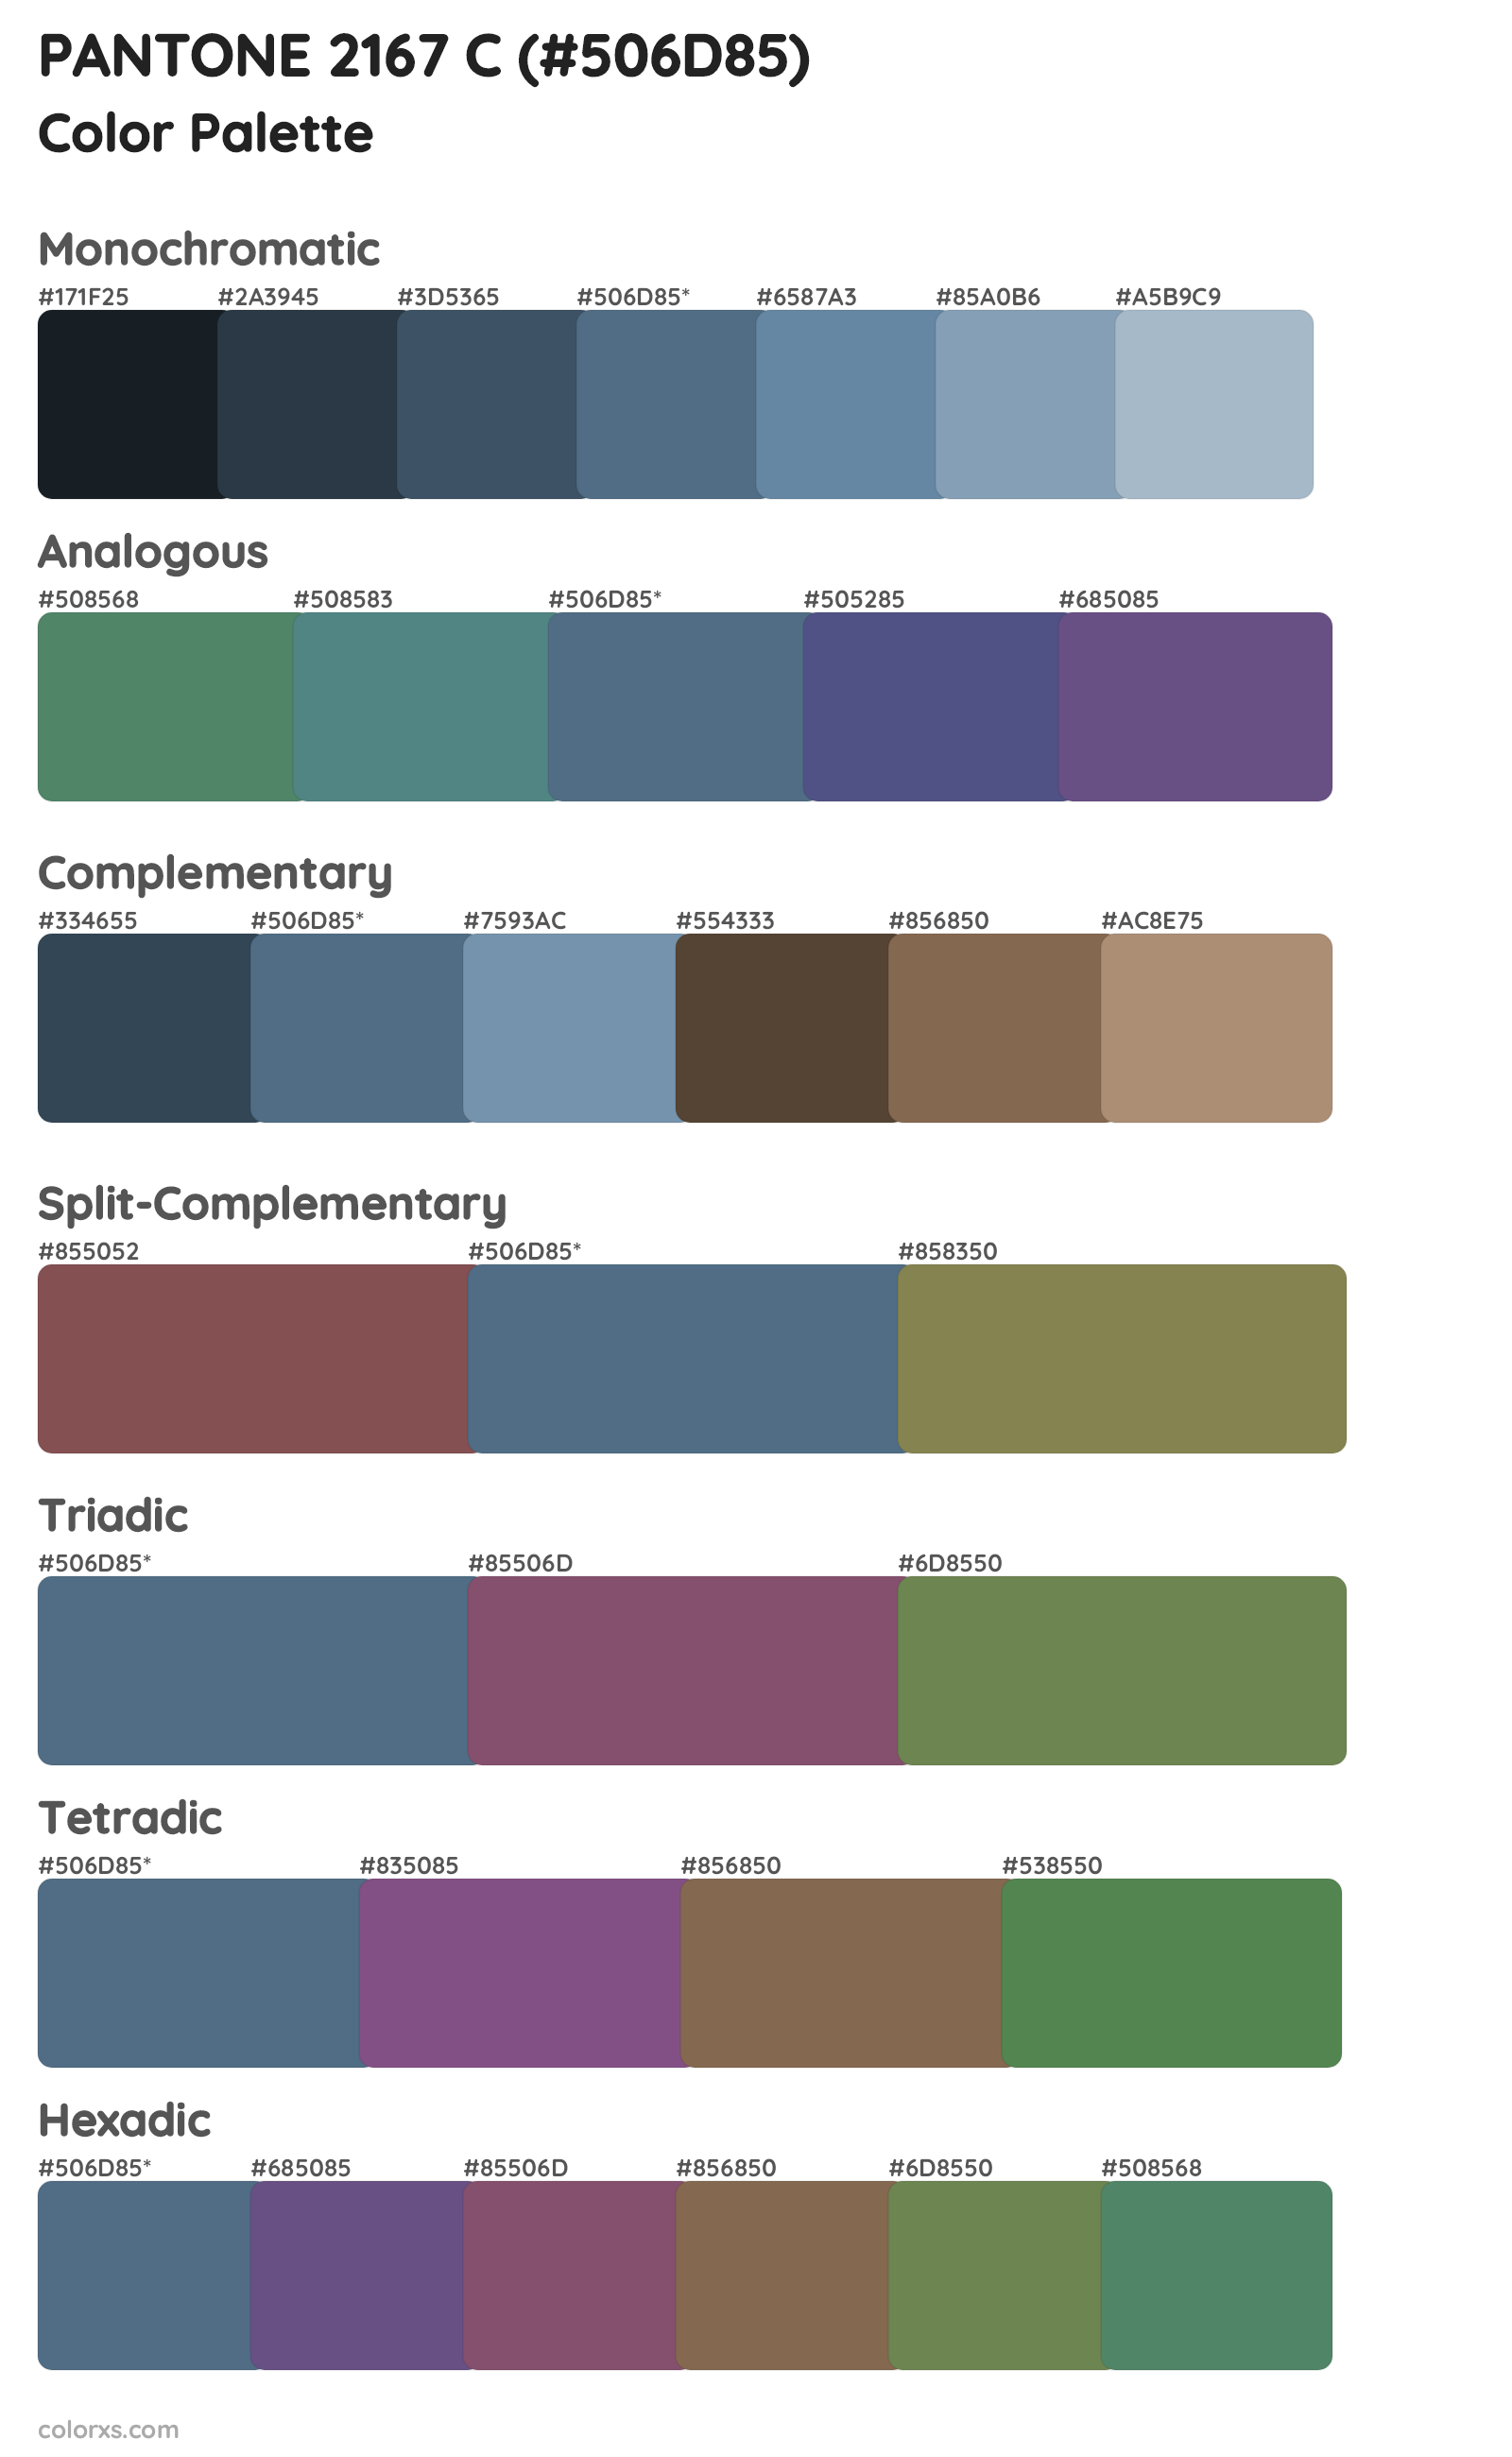 PANTONE 2167 C Color Scheme Palettes